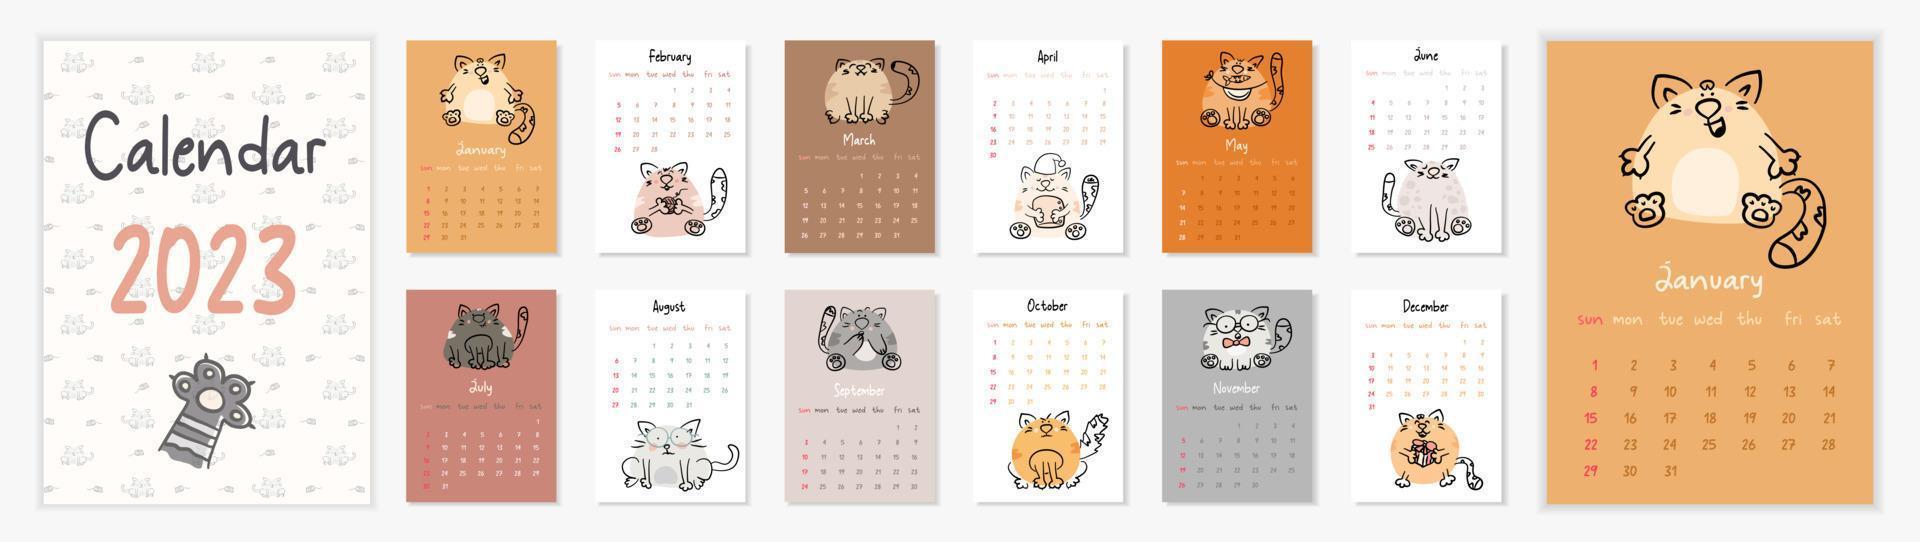 calendário vetorial vertical 2023 com gatos desenhados à mão. capa ilustrada e páginas de 12 meses com bichinhos engraçados. semana começa no domingo. para tamanho a4,a5,a3. vetor